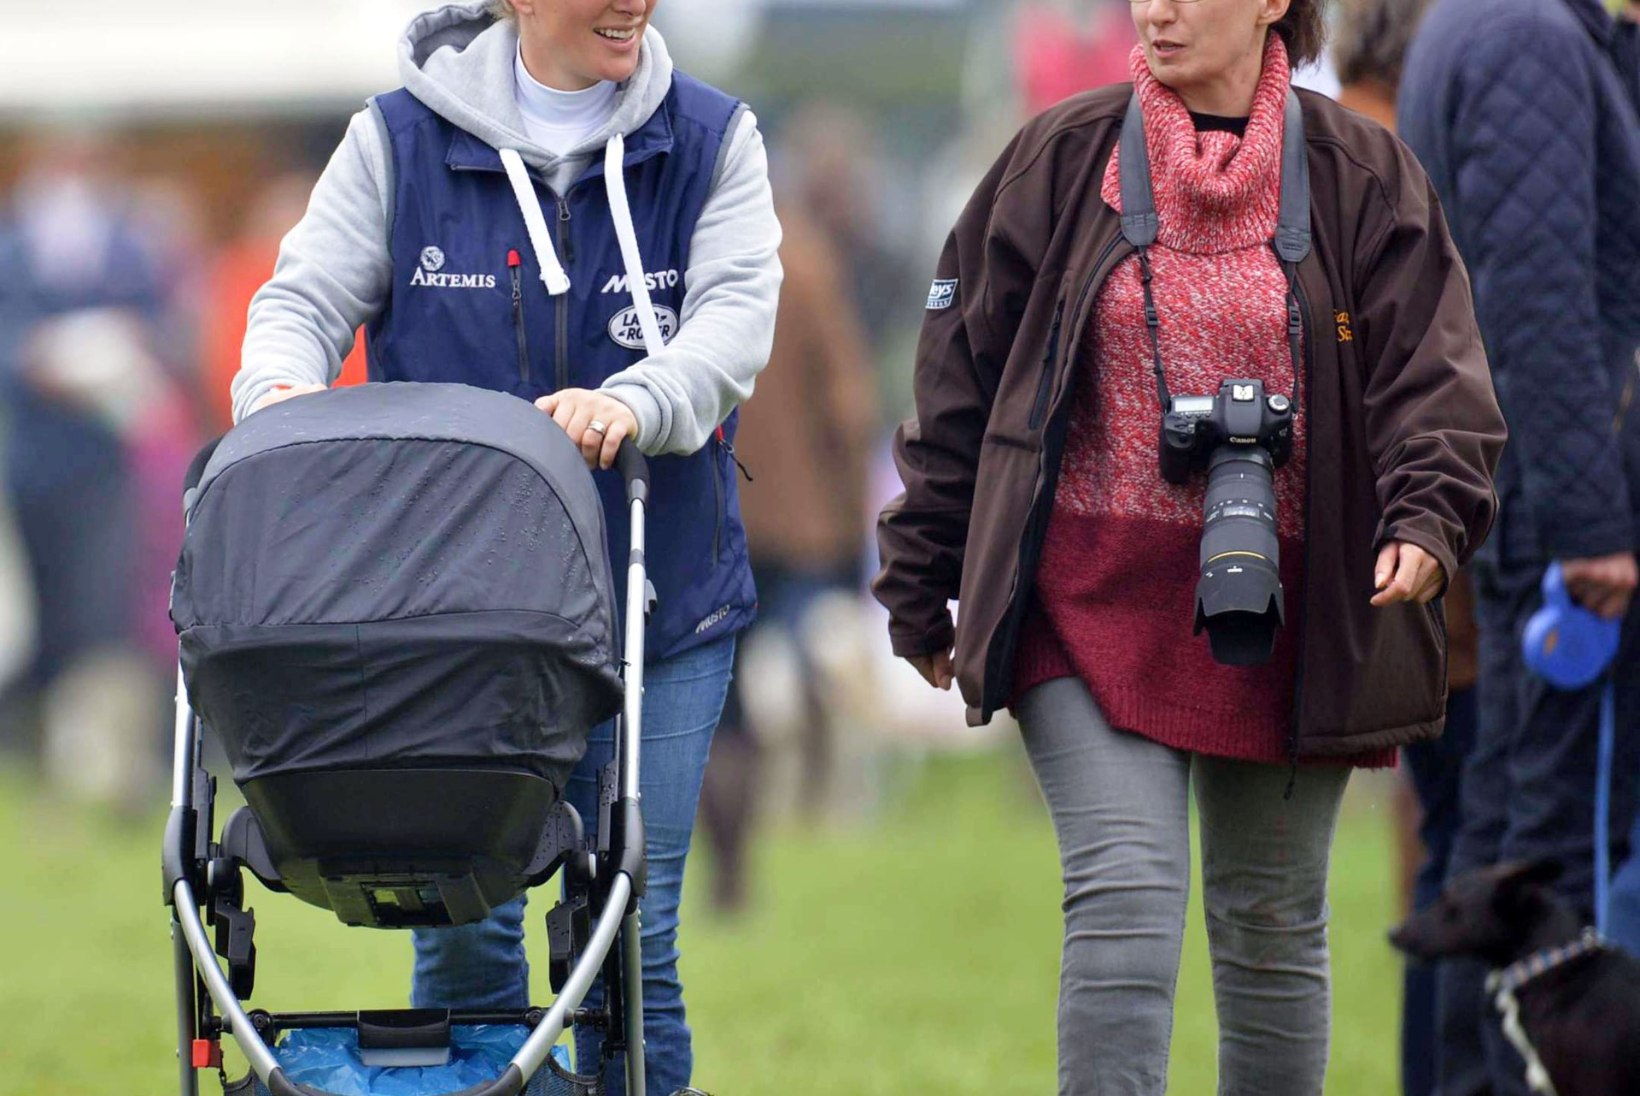 NÄDALA PAPARATSO: Prints William söötis loomaaias kaelkirjakut, Gwen Stefani tähistas perega lihavõtteid, Simon Cowell jalutas beebi ja kallimaga